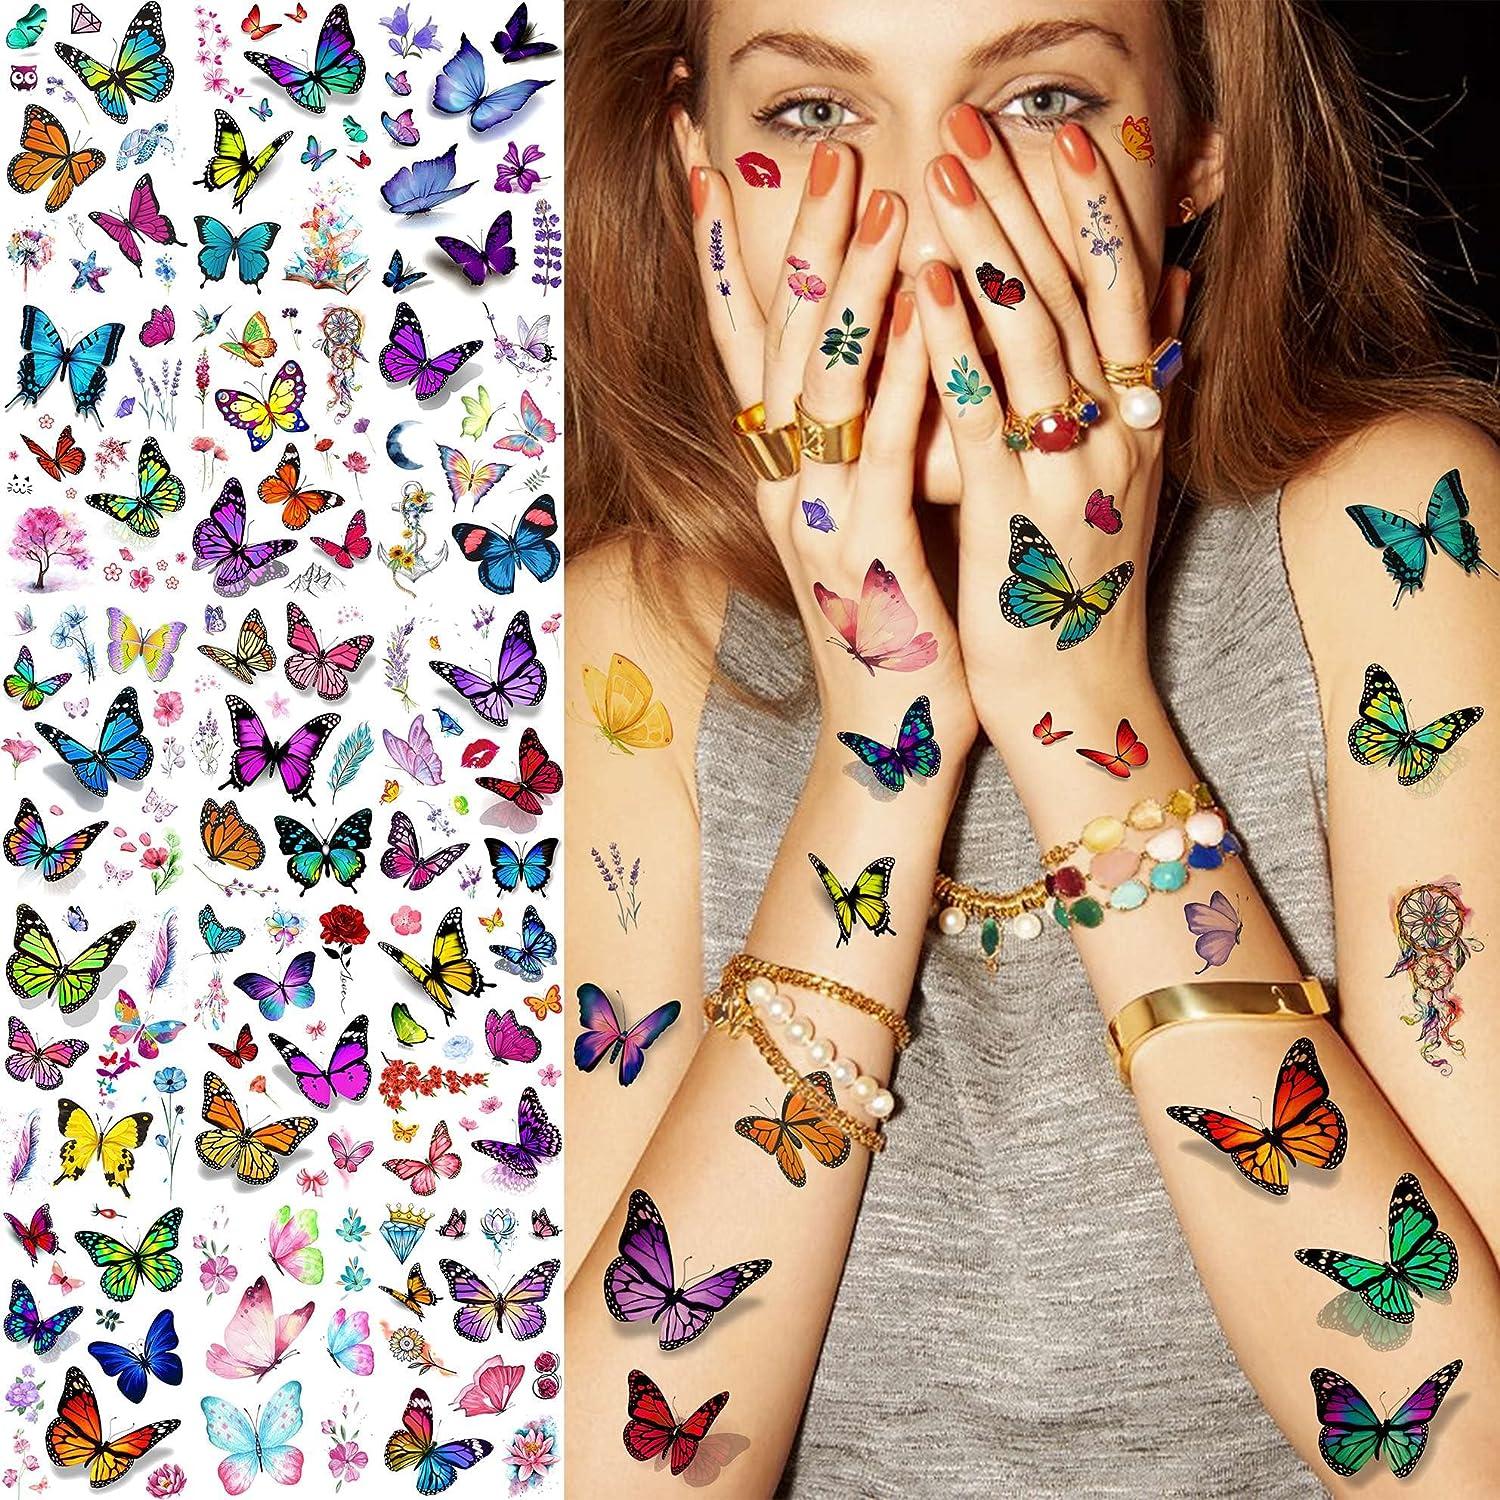 3d Butterfly Tattoos | Dövme, Dövme fikirleri, Dövme desenleri